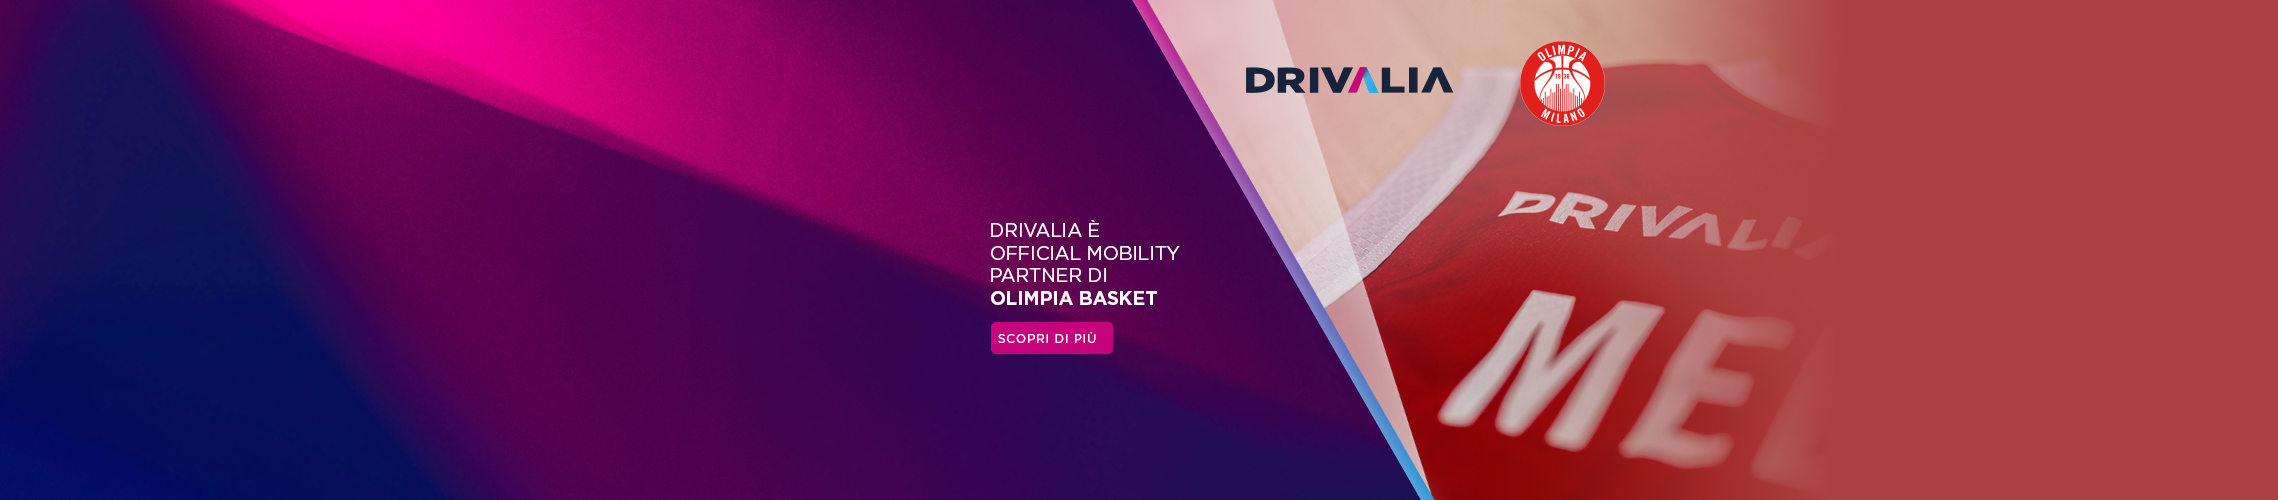 Drivalia è Official Mobility Partner di Olimpia Basket